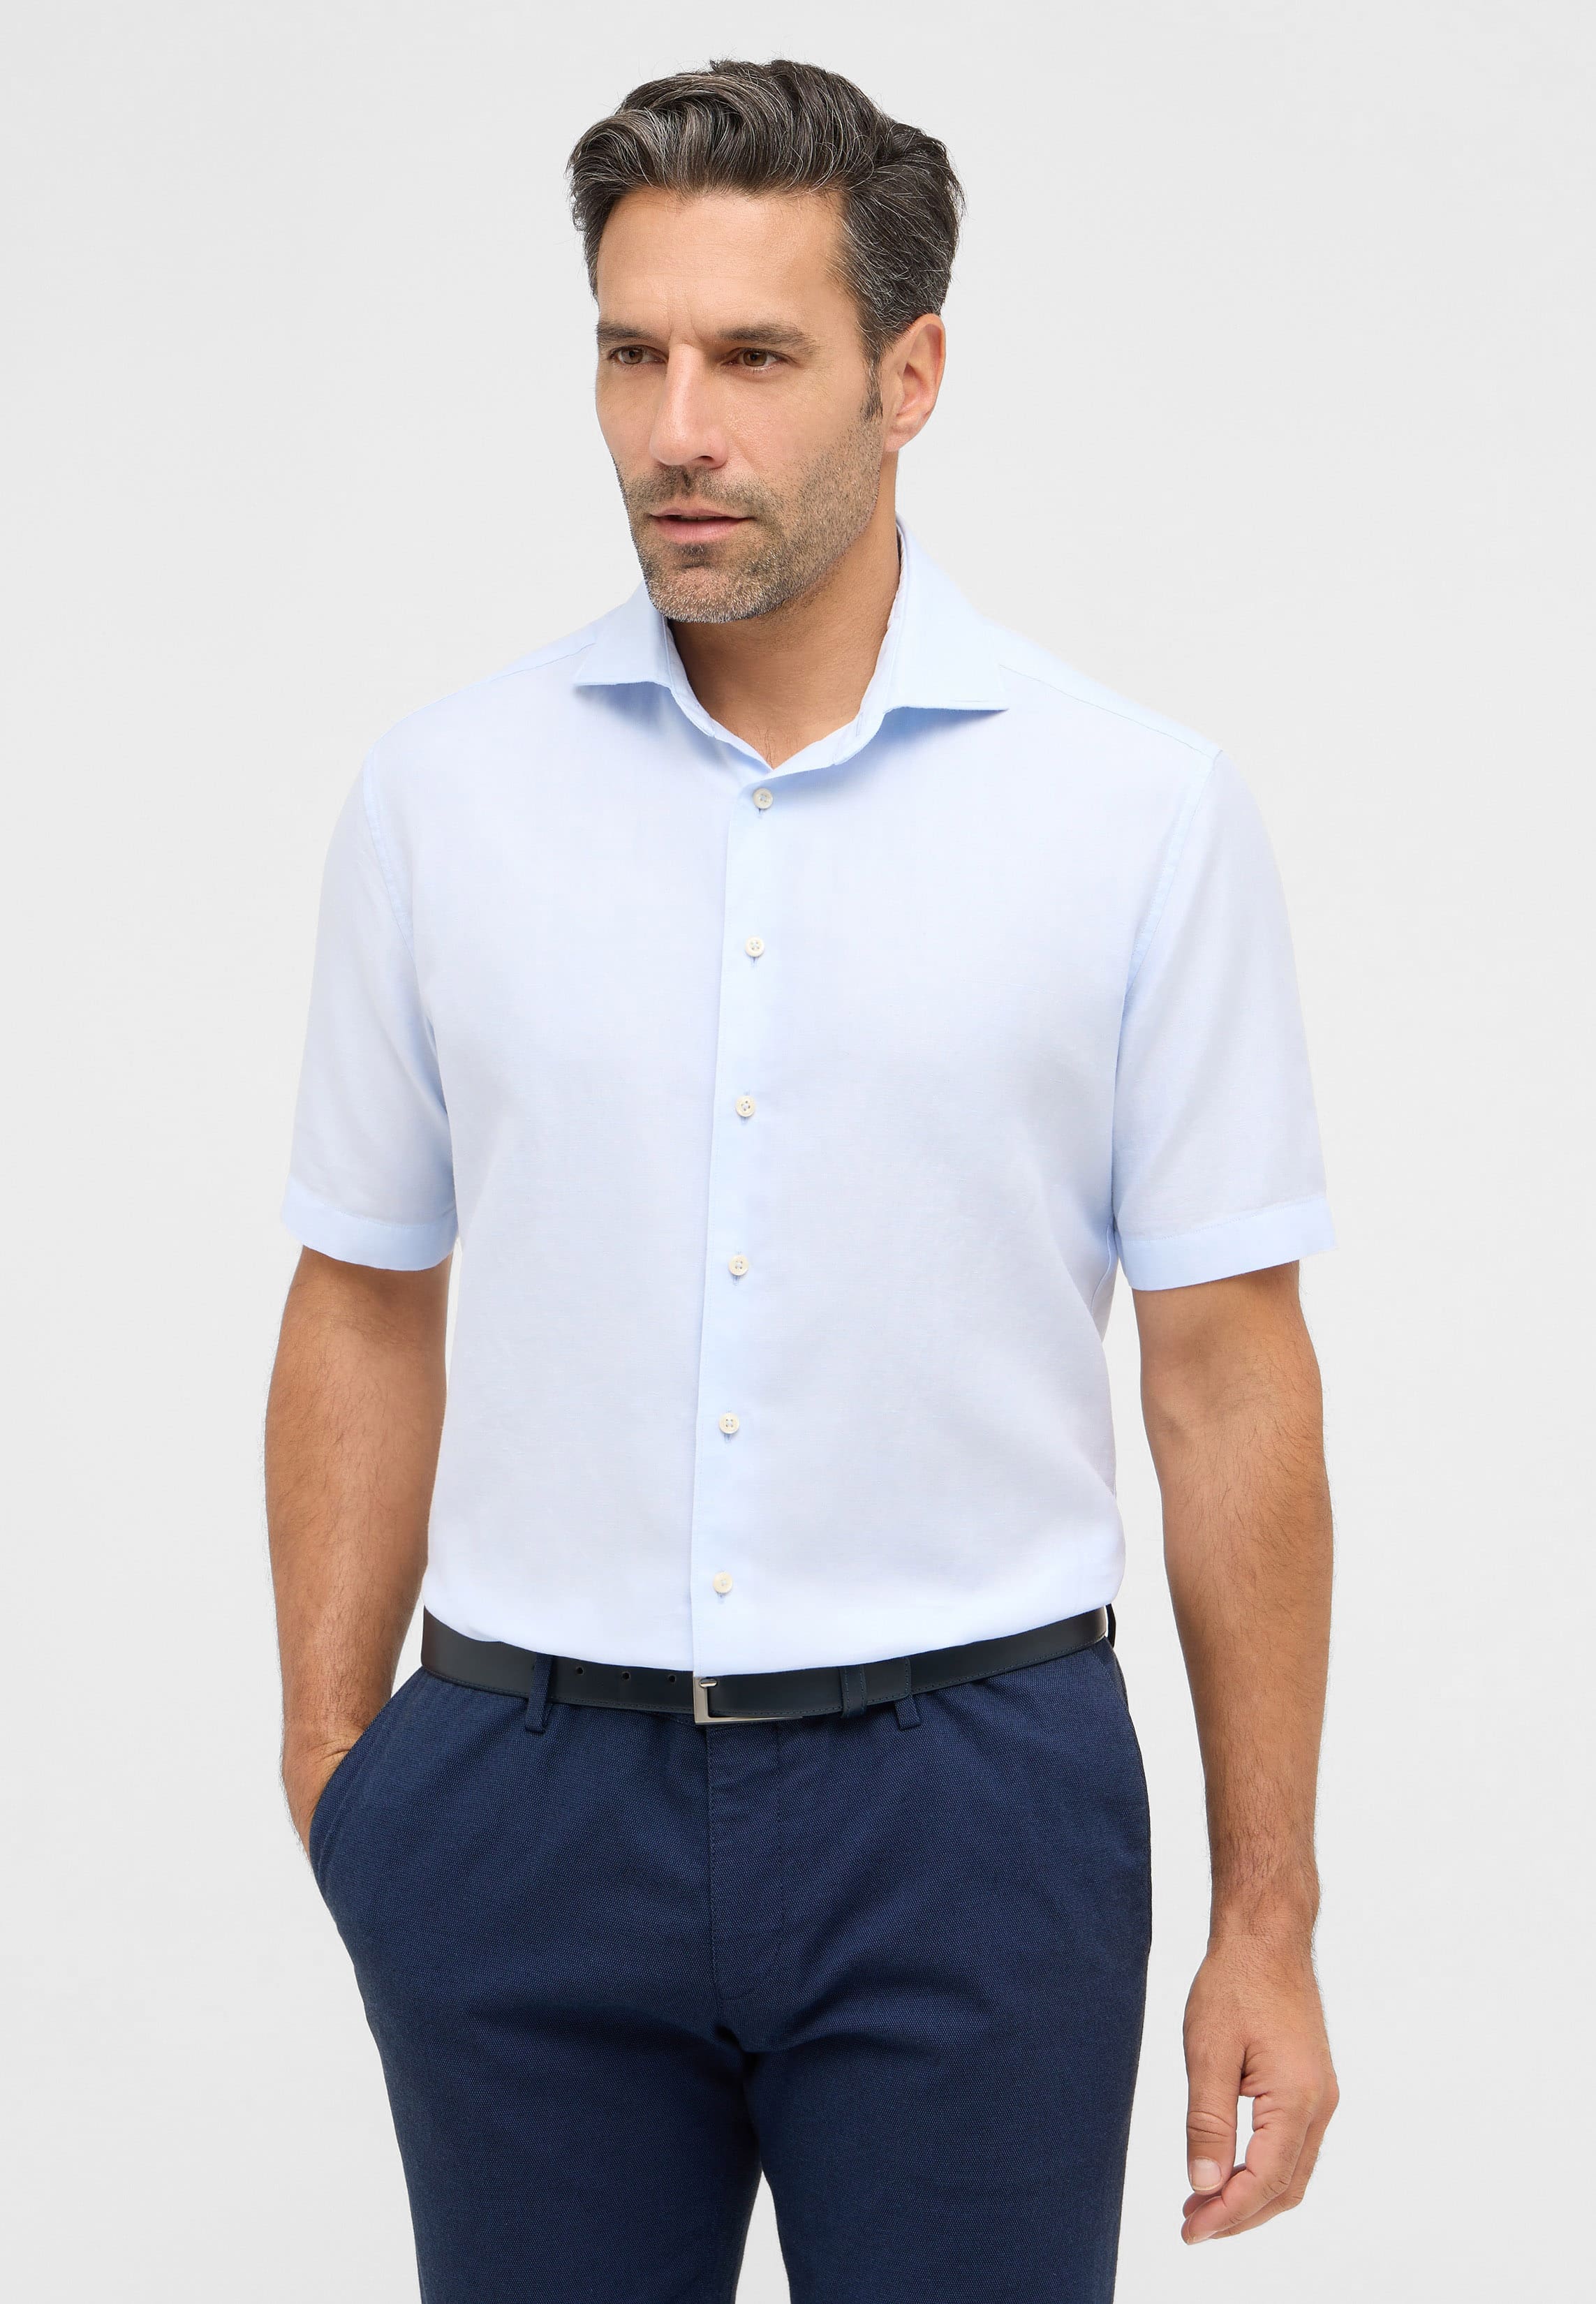 MODERN FIT Linen Shirt in pastel blue plain